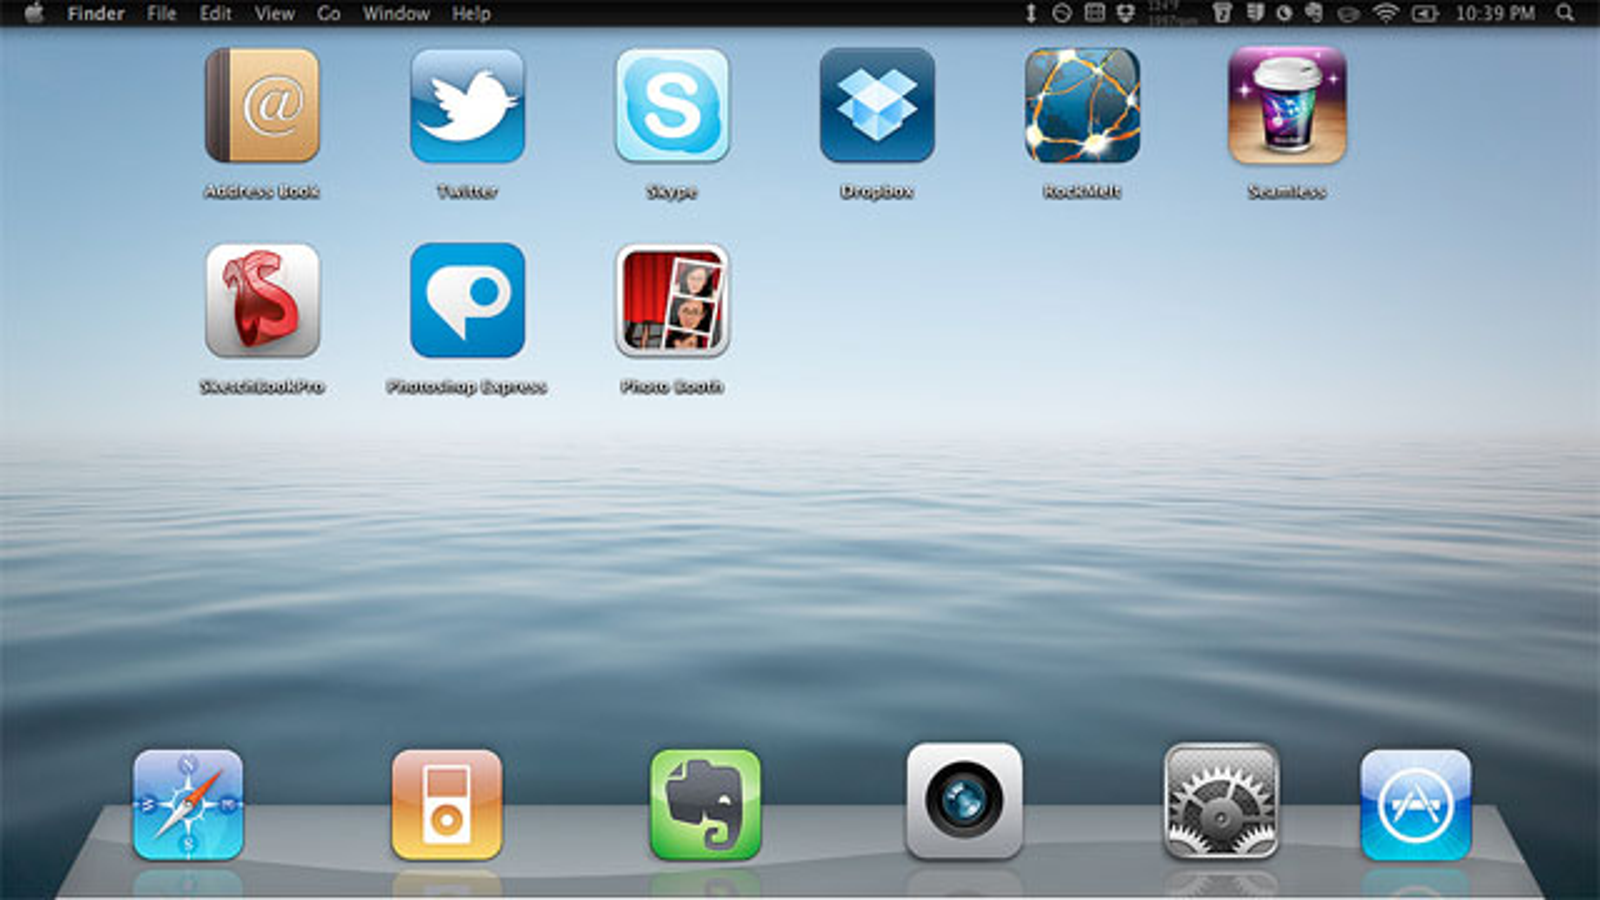 mac desktop icons changed